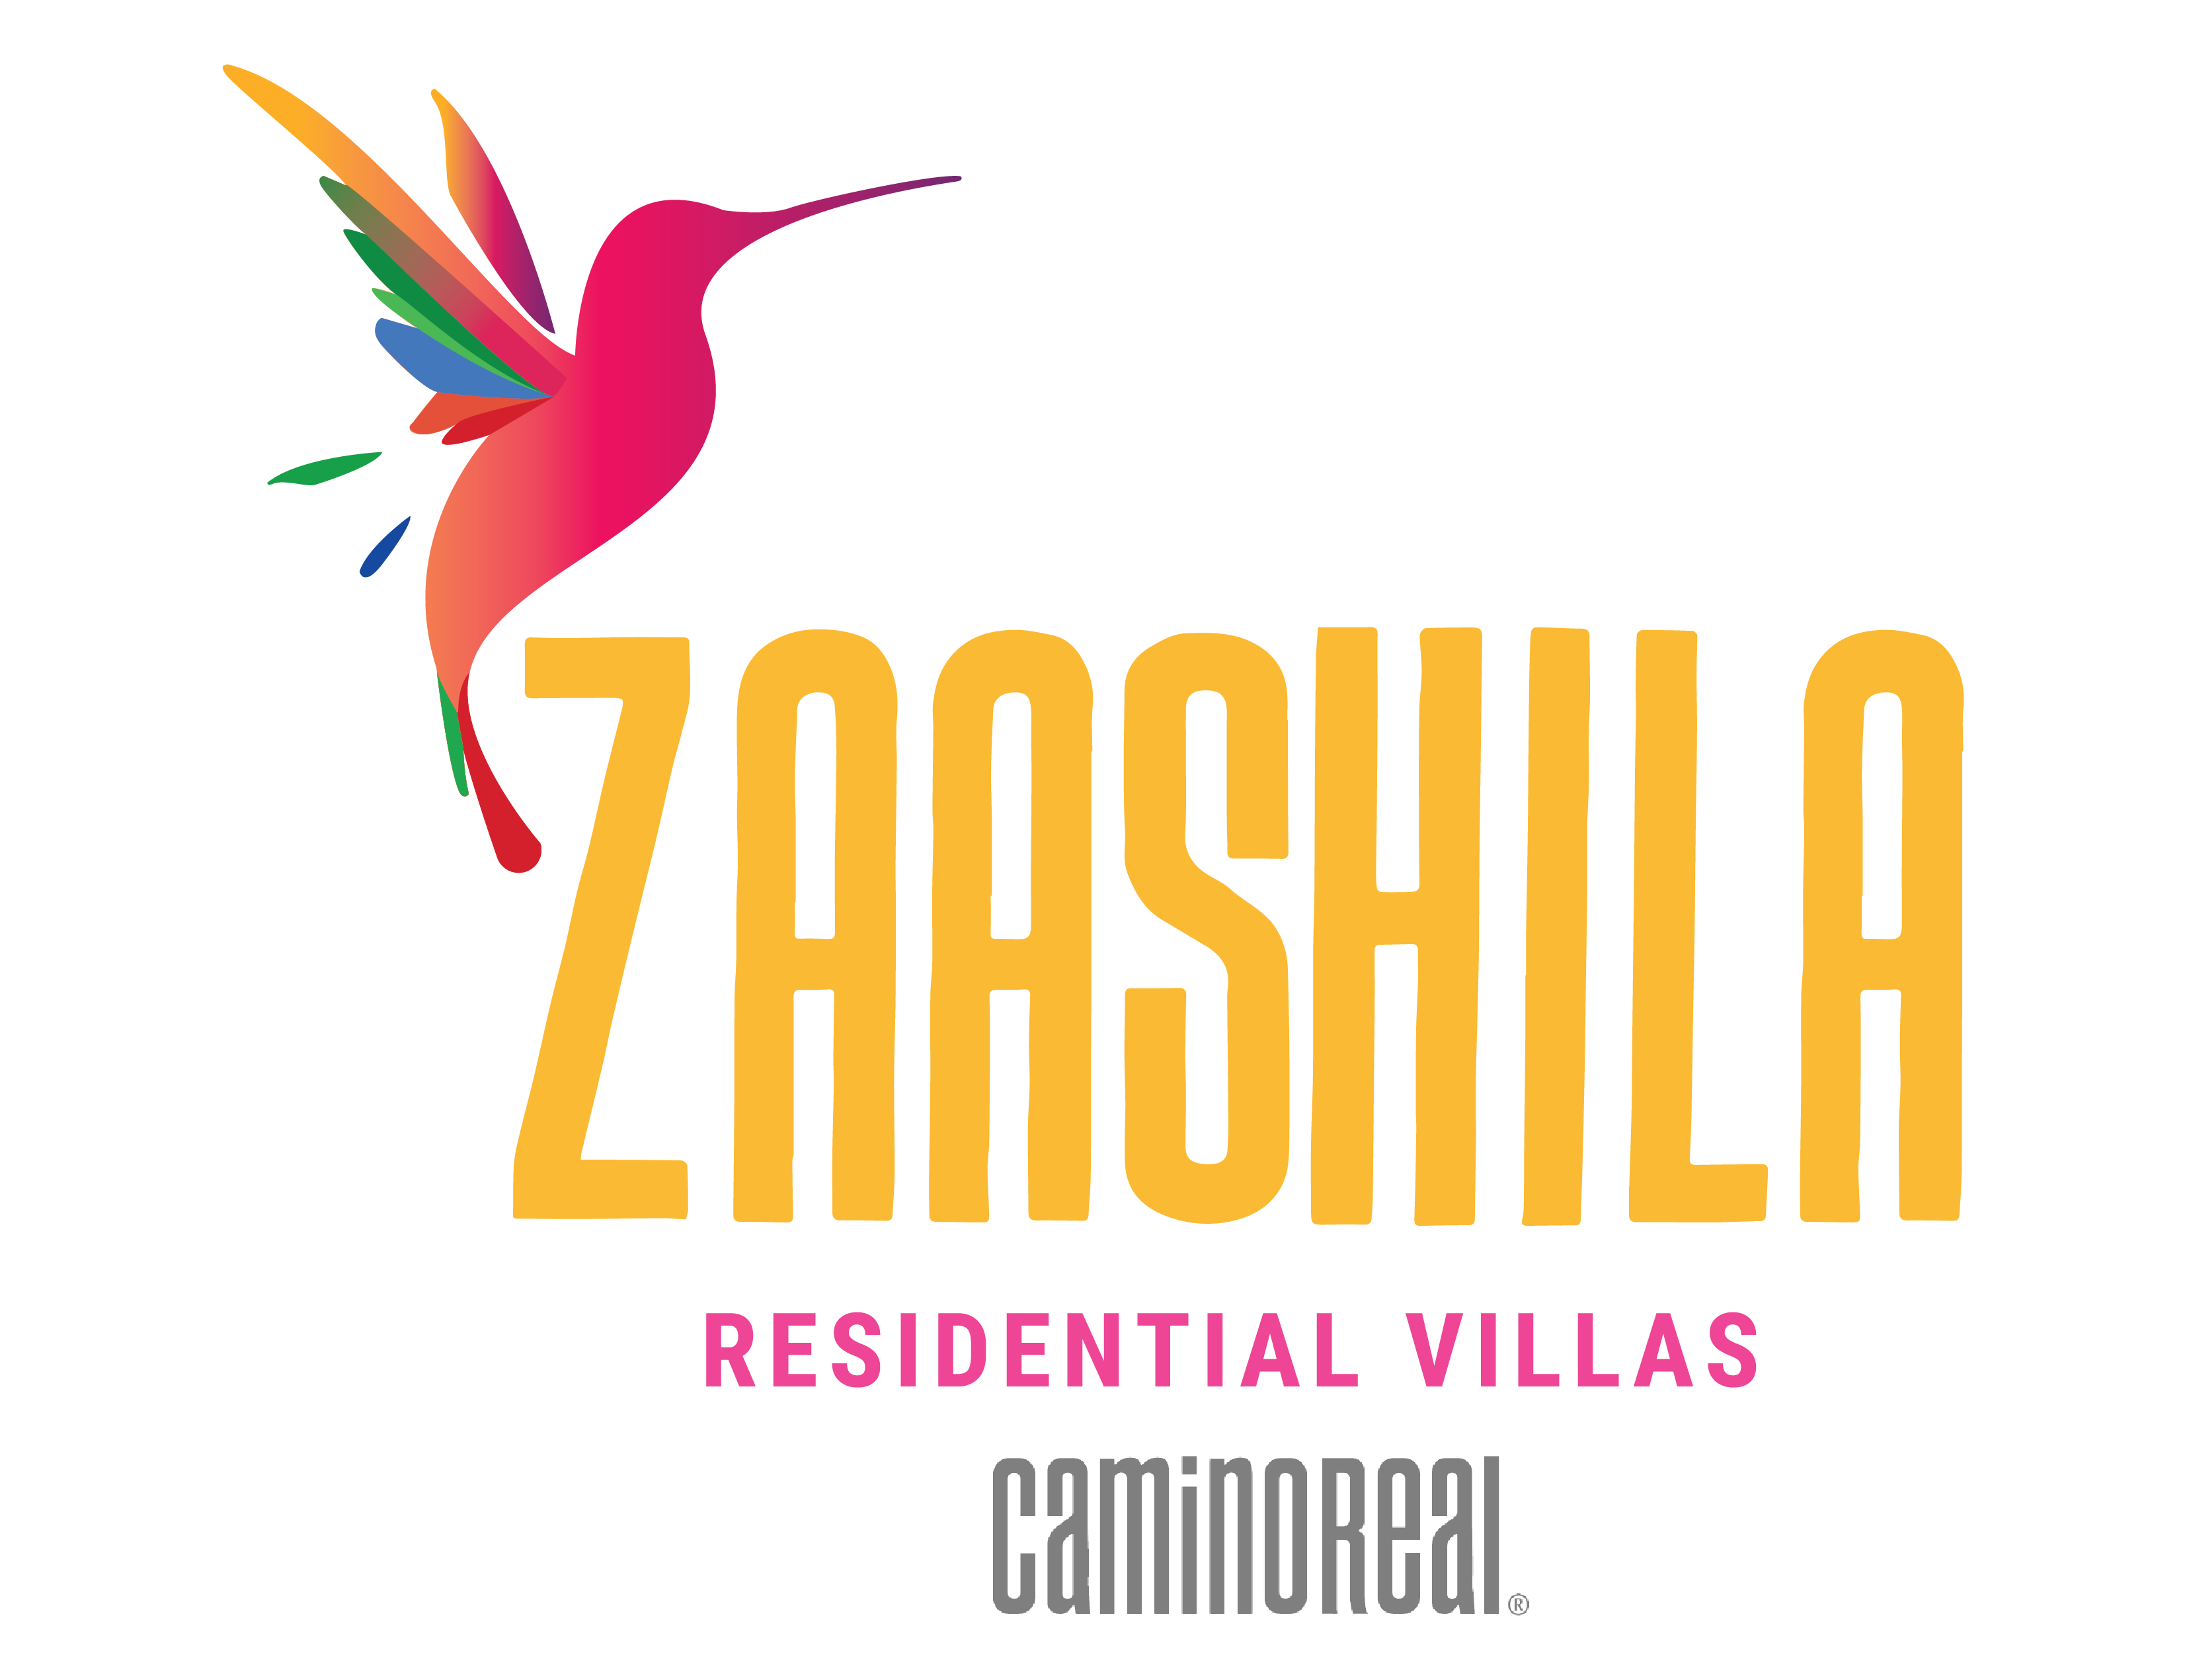 Logo_Villas_Zaashila-01